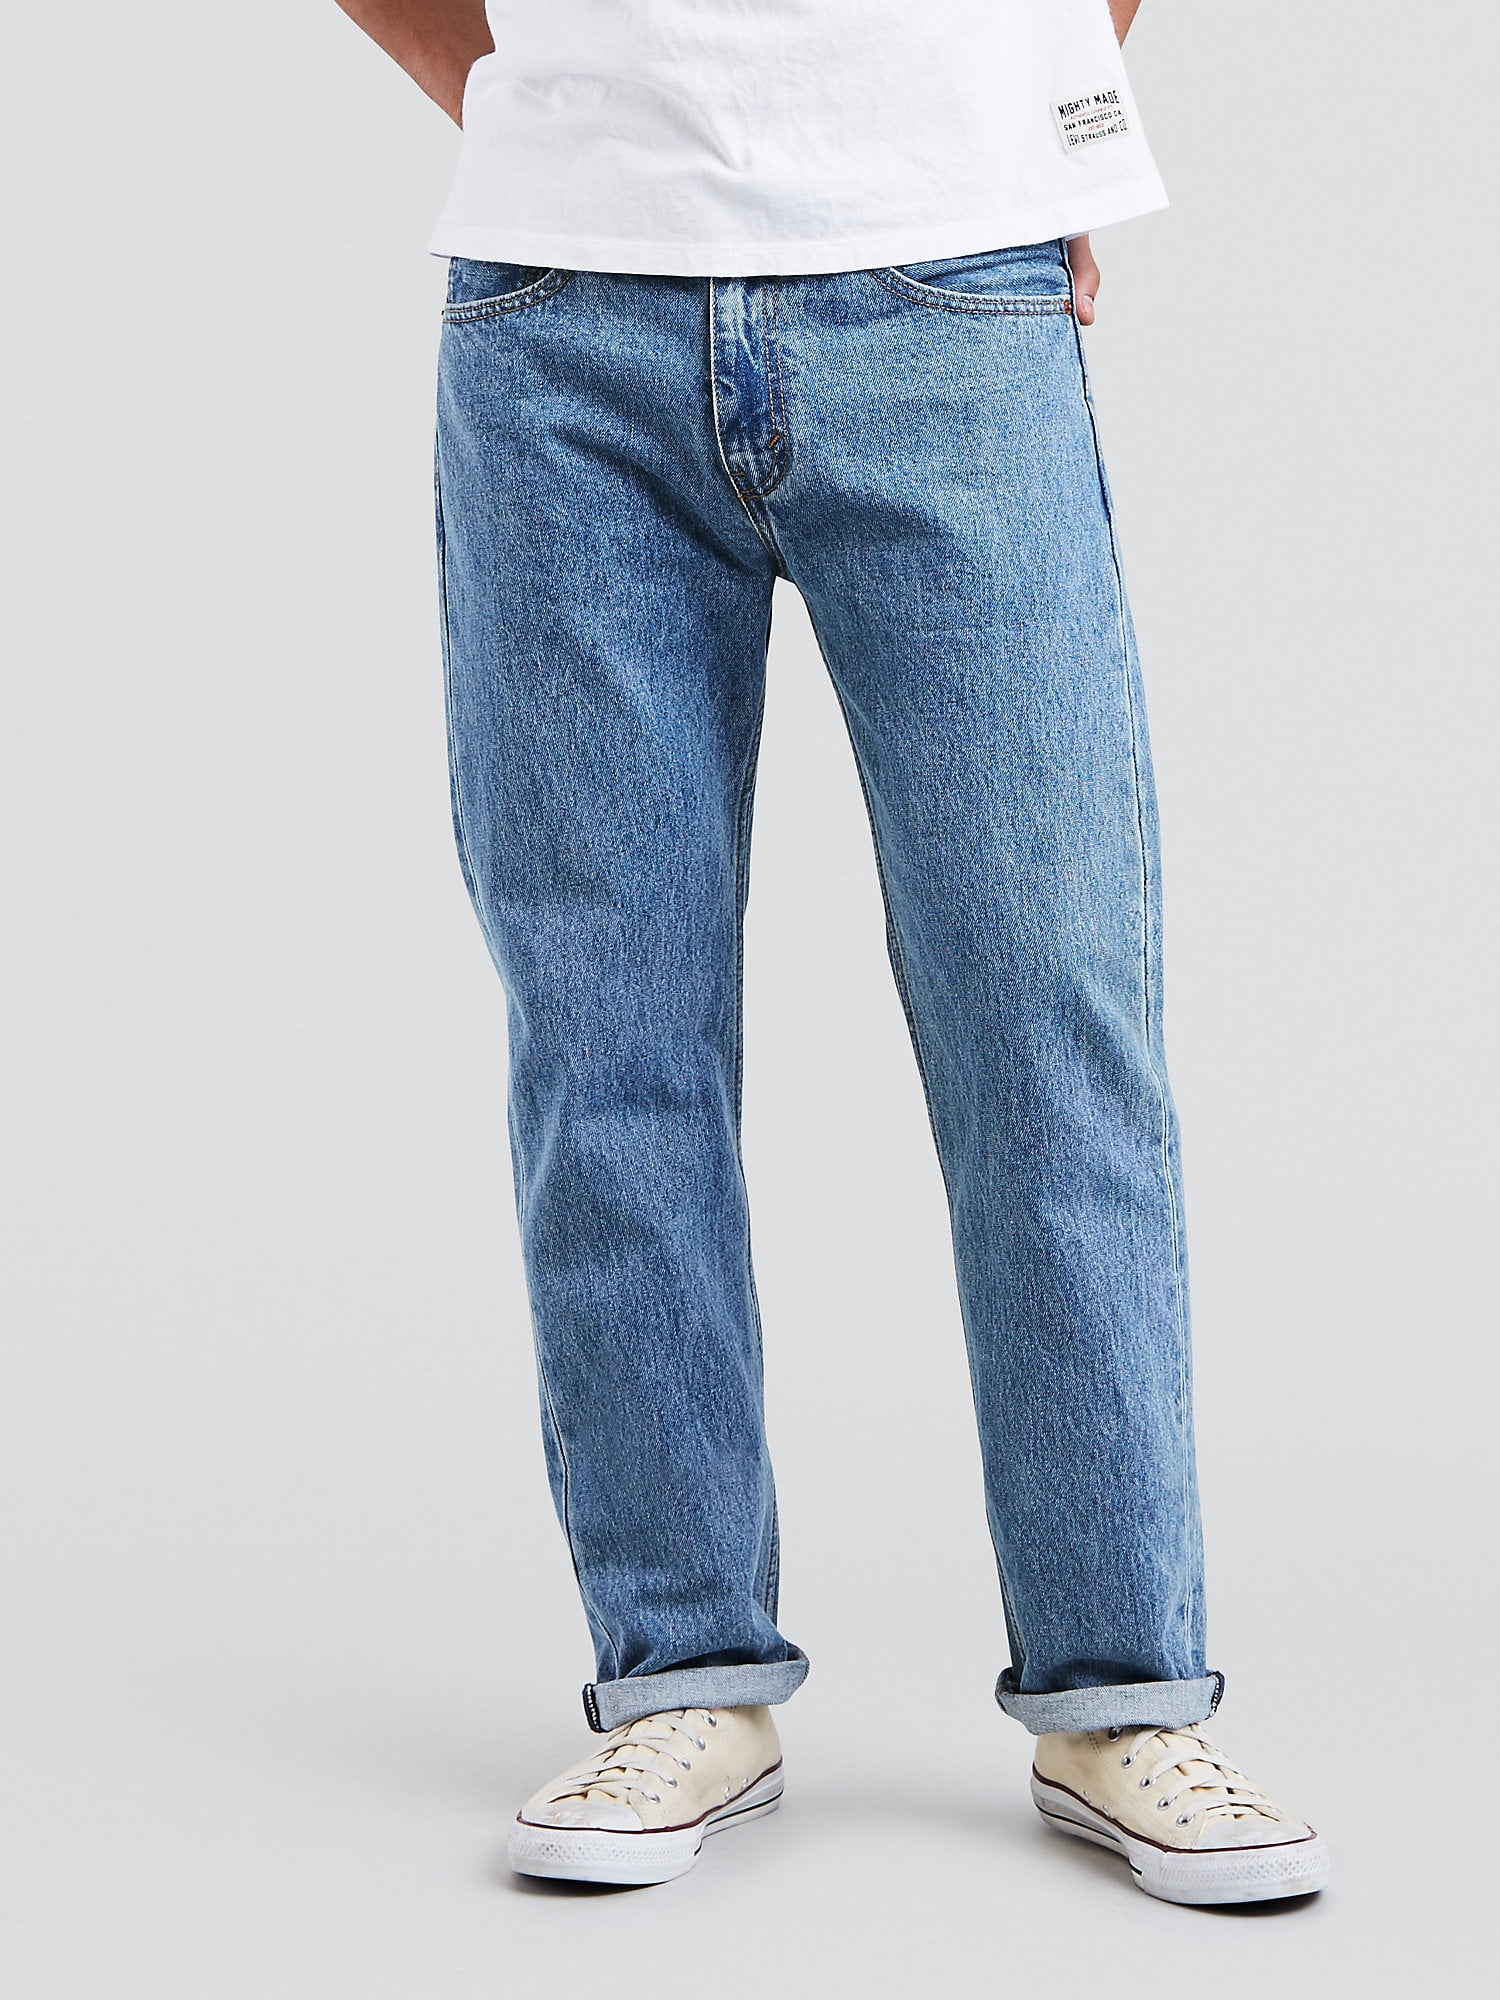 hjerne karton tilgive Levis Men's 505 Regular Fit Jeans - Walmart.com